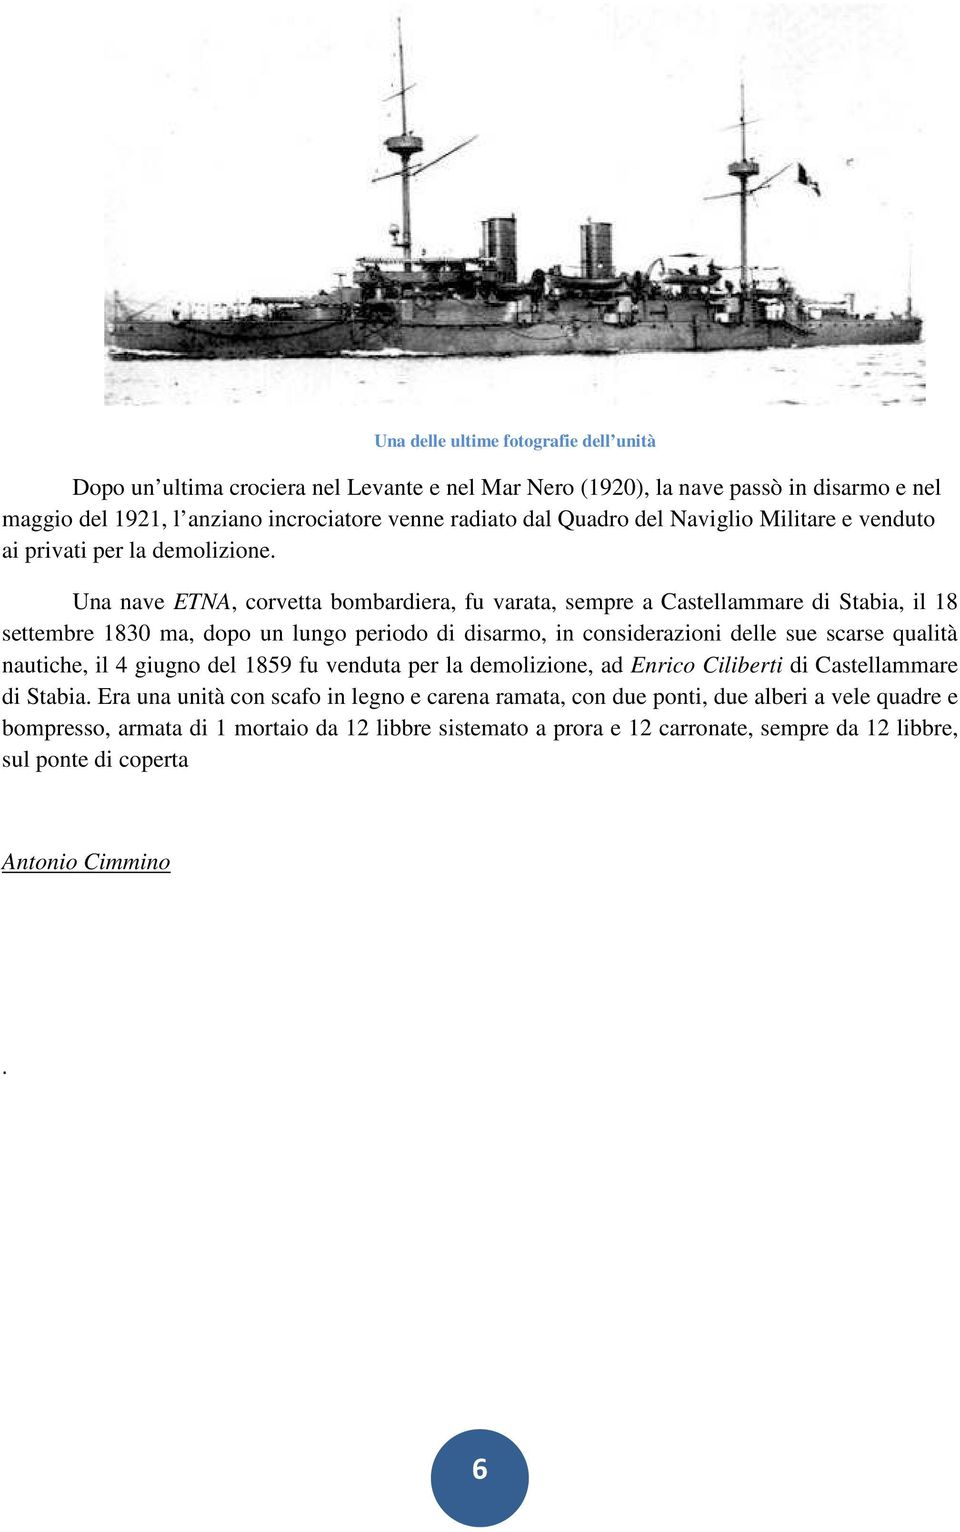 Una nave ETNA, corvetta bombardiera, fu varata, sempre a Castellammare di Stabia, il 18 settembre 1830 ma, dopo un lungo periodo di disarmo, in considerazioni delle sue scarse qualità nautiche,